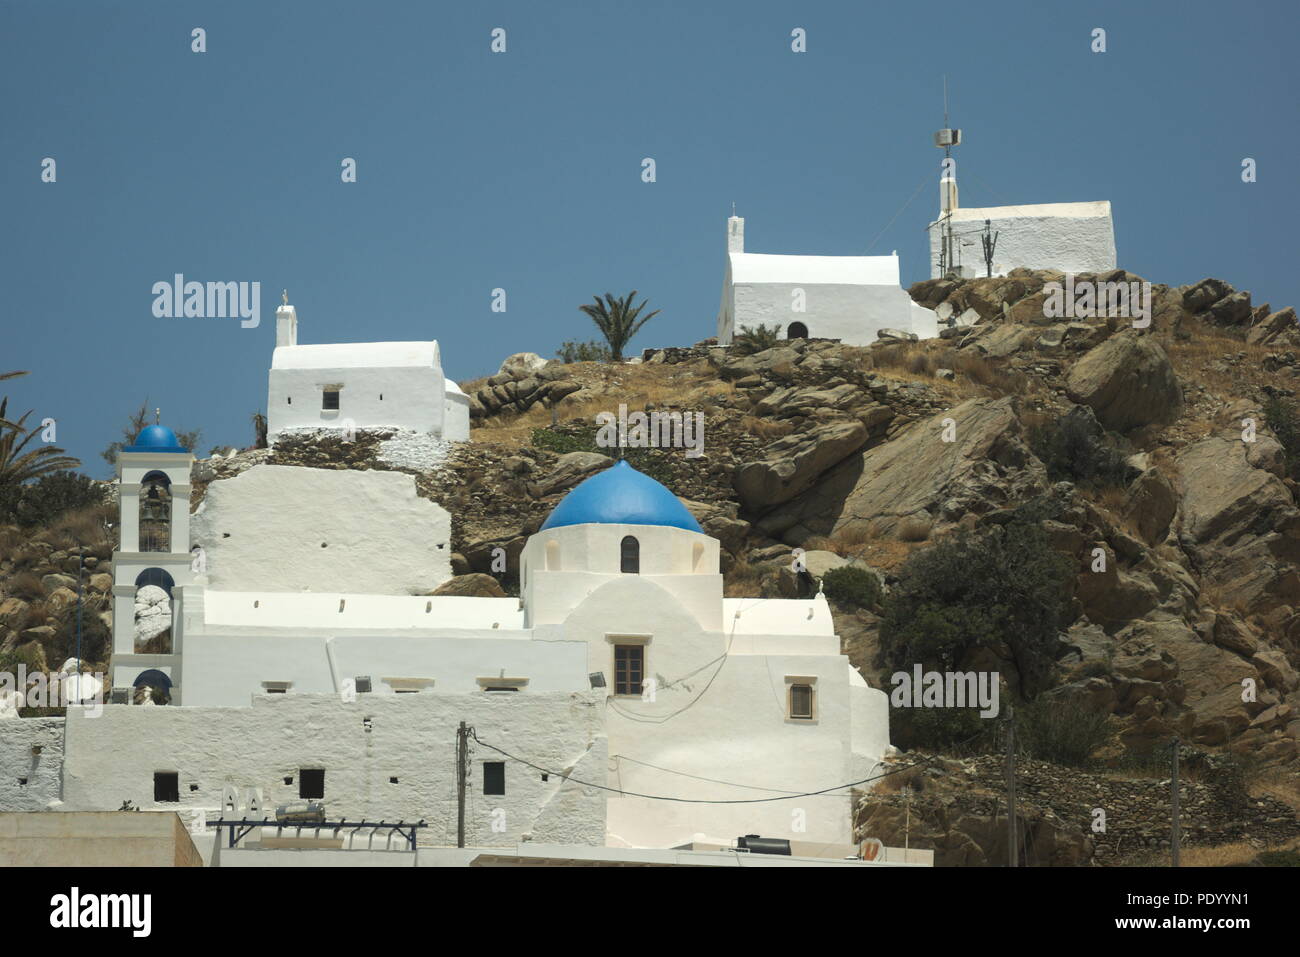 Europa, Griechenland, Insel Ios in der Kykladen, die Hora (Stadt). Kirchen und Kapellen auf dem Hügel über der Stadt thront. Stockfoto